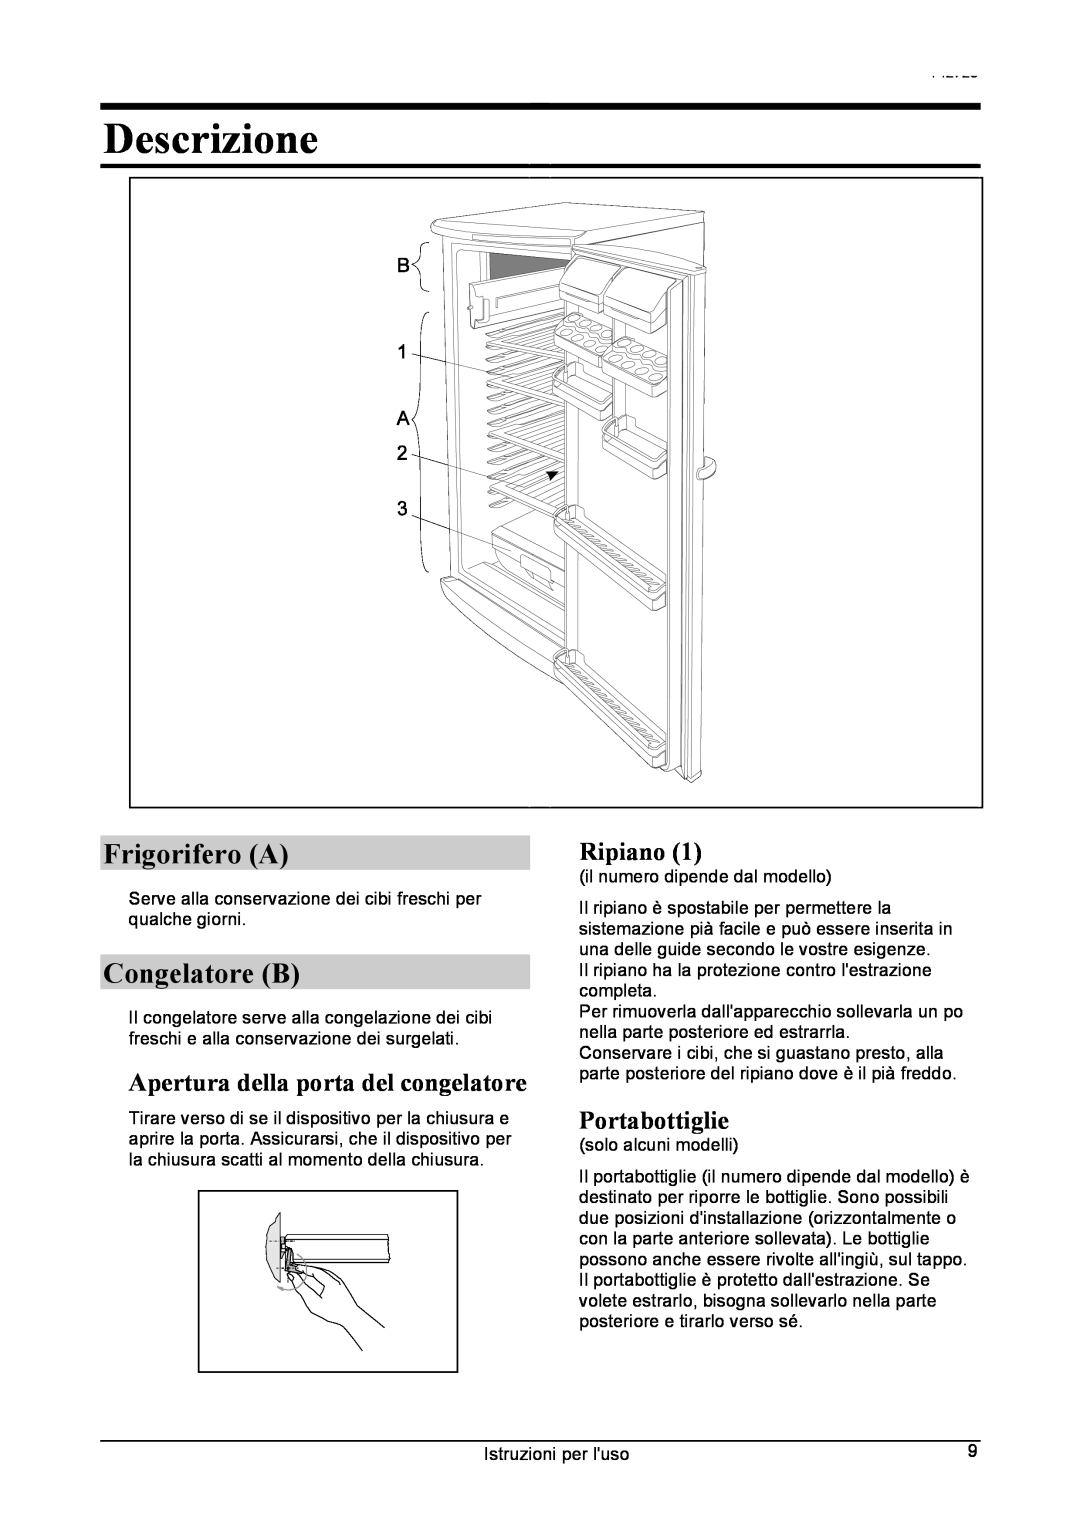 Smeg 142725 manual Descrizione, Frigorifero A, Congelatore B, Apertura della porta del congelatore, Portabottiglie, Ripiano 